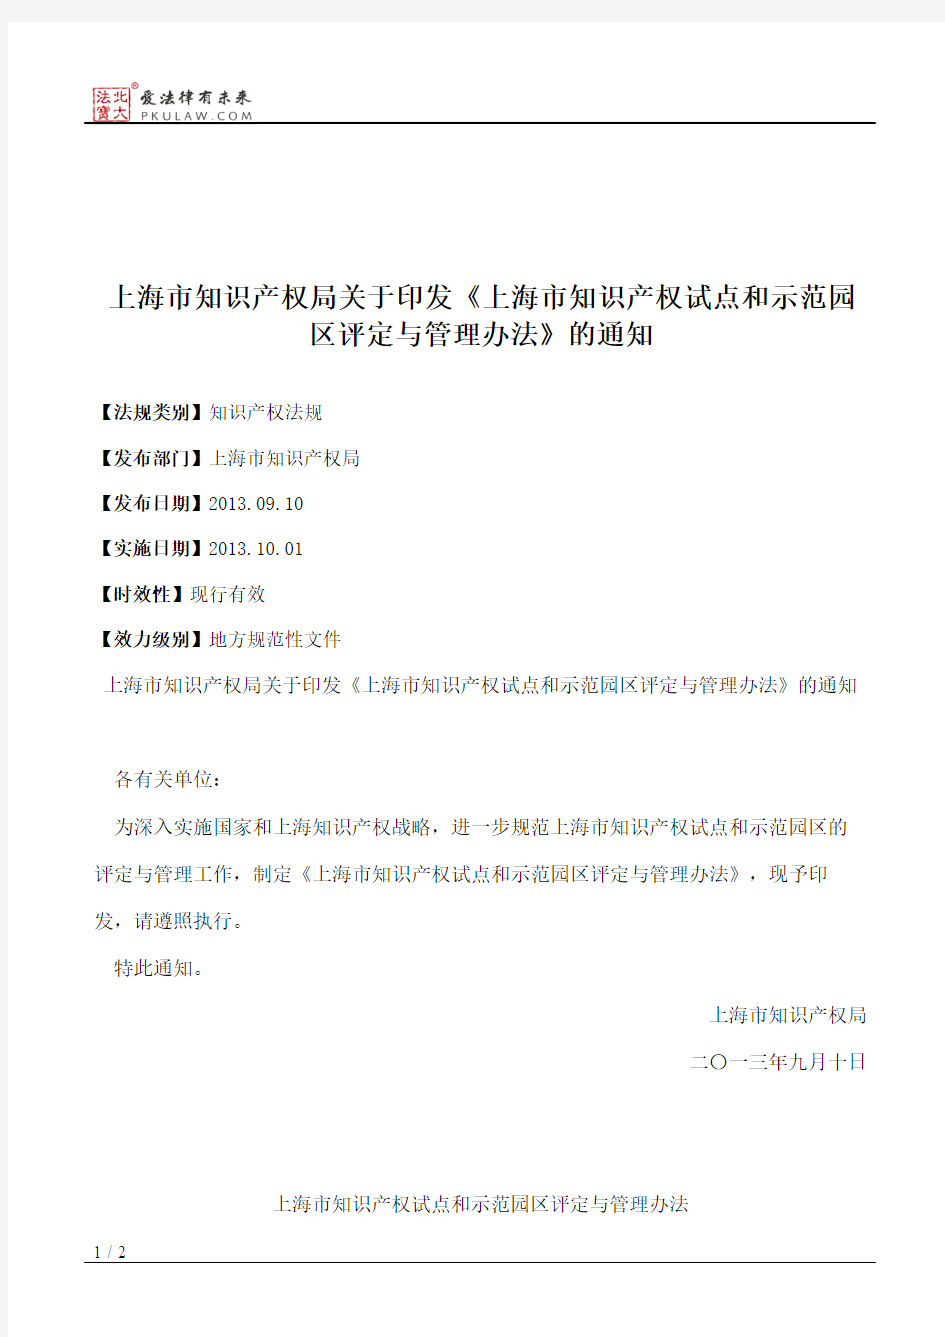 上海市知识产权局关于印发《上海市知识产权试点和示范园区评定与